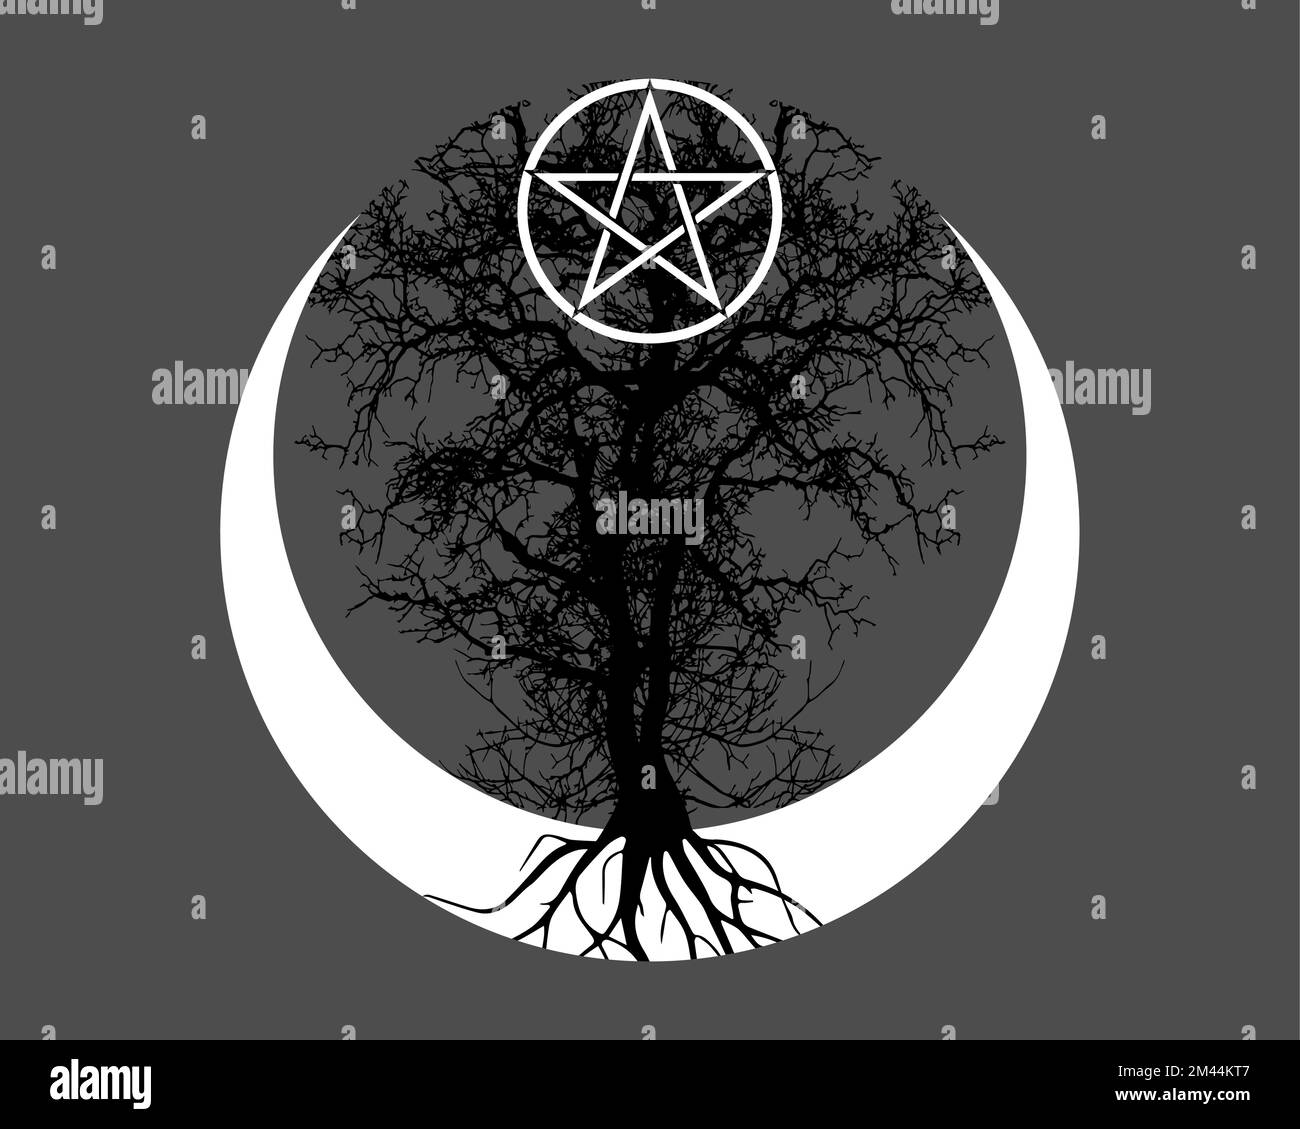 Luna mistica, albero della vita e pentacolo di Wicca. Geometria sacra. Logo, Crescent moon, Half moon pagan Wiccan divinità simbolo, energia cerchio, tatuaggio Illustrazione Vettoriale